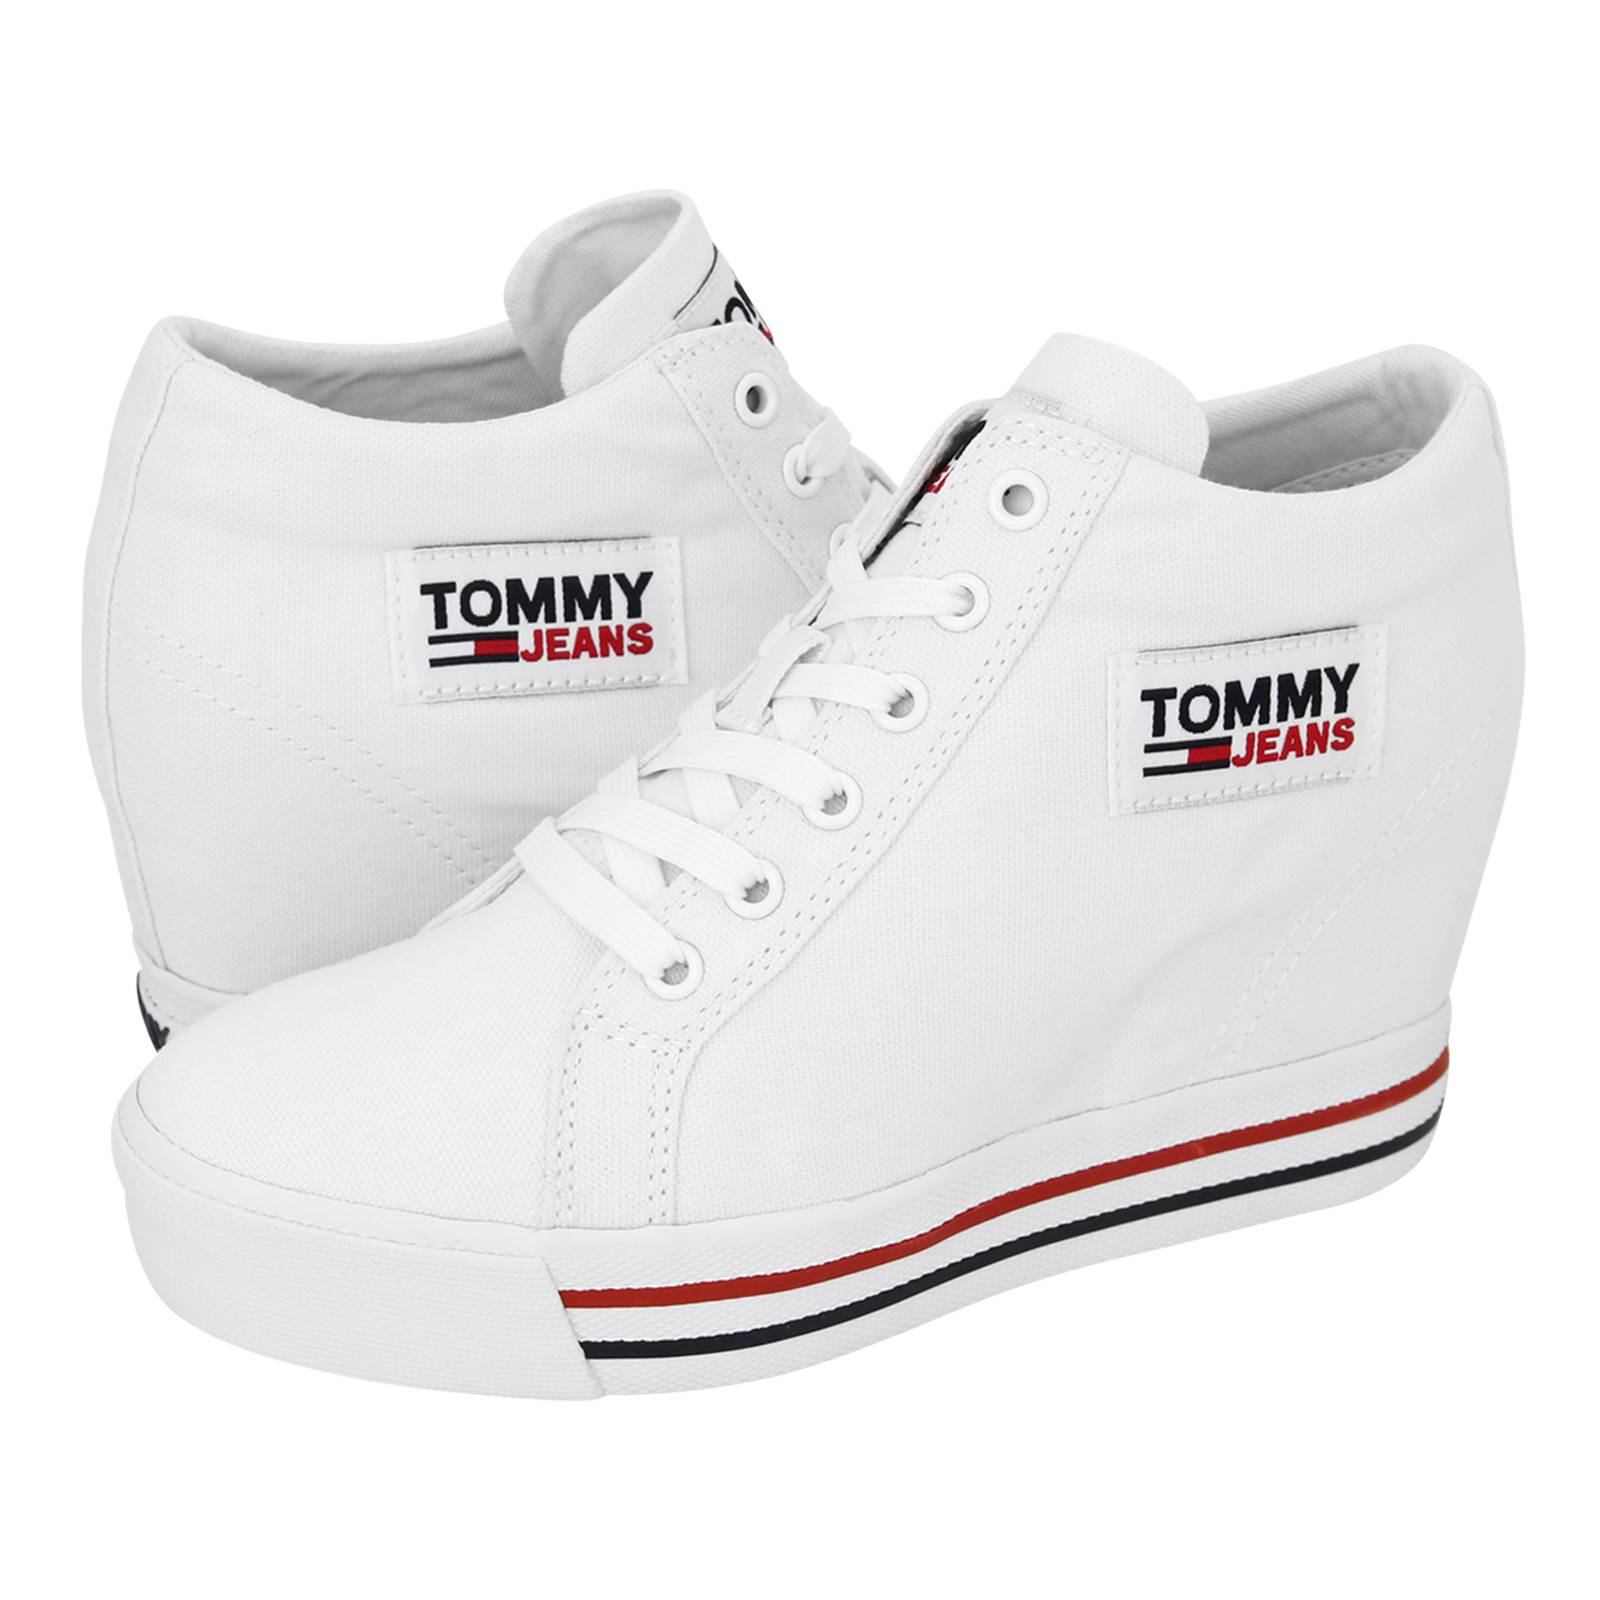 tommy hilfiger online shoes